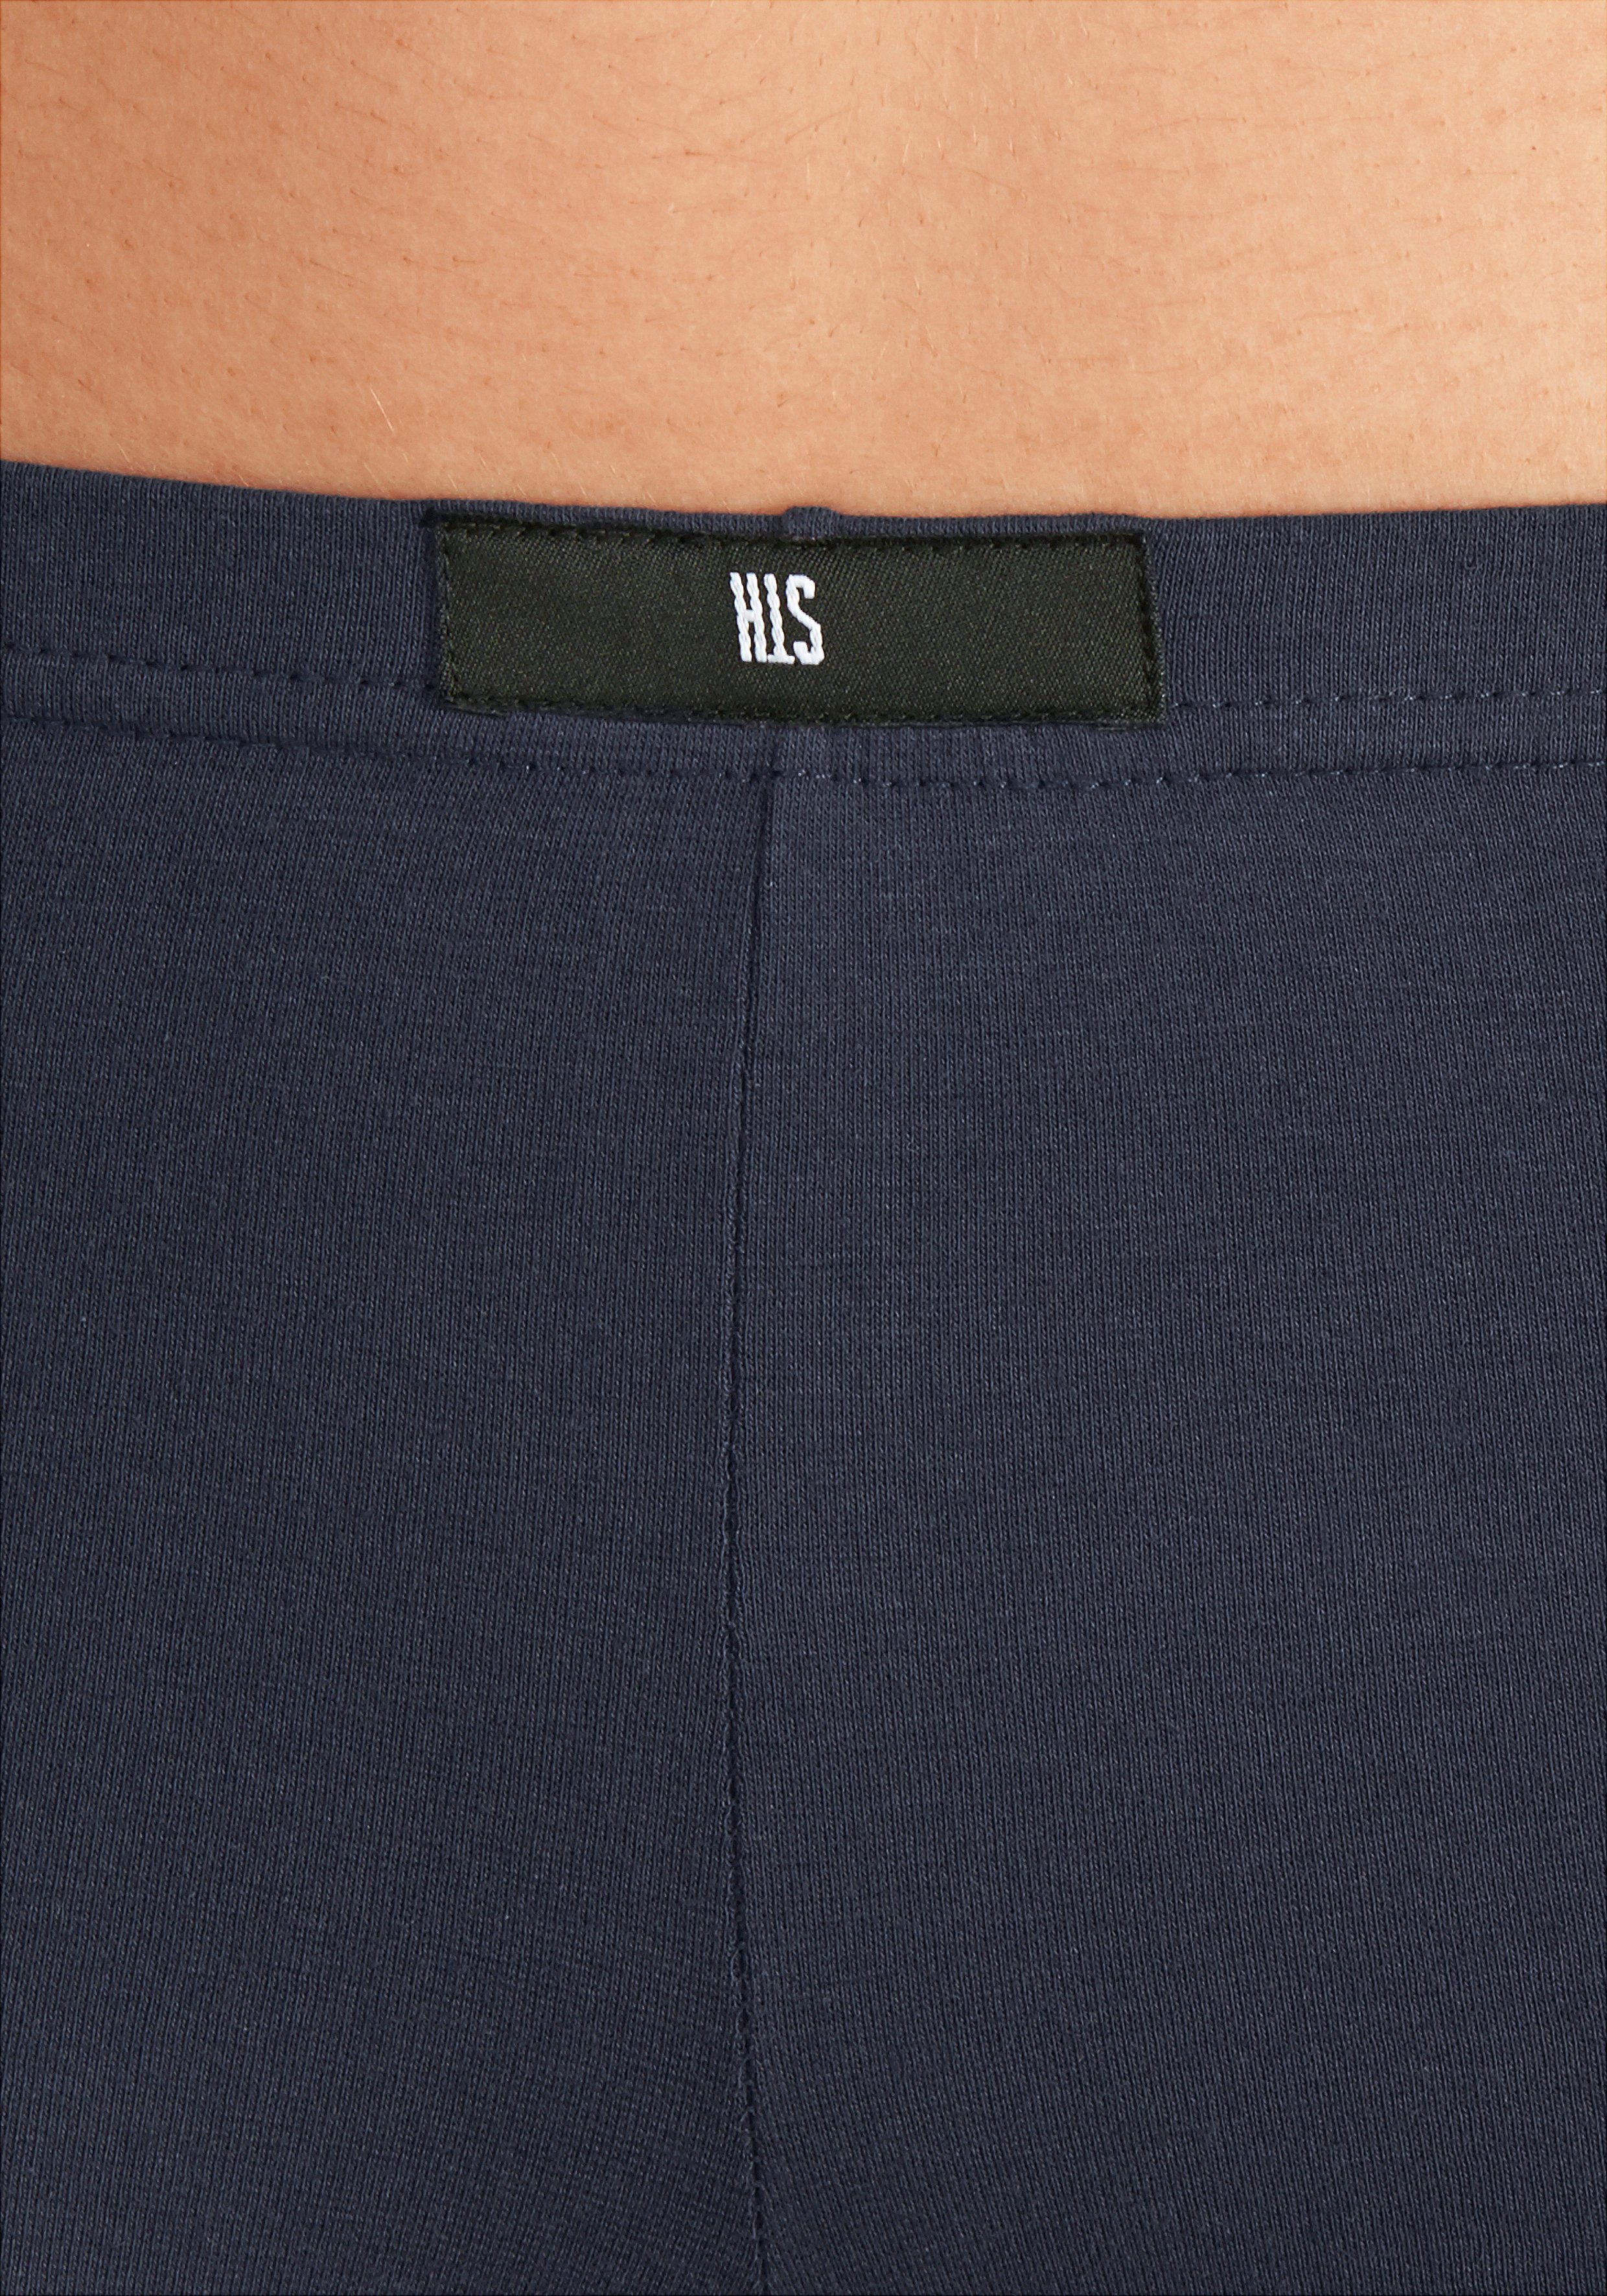 rot marine, blau, H.I.S aus Panty 4-St) (Packung, Baumwoll-Qualität grau-meliert, elastischer